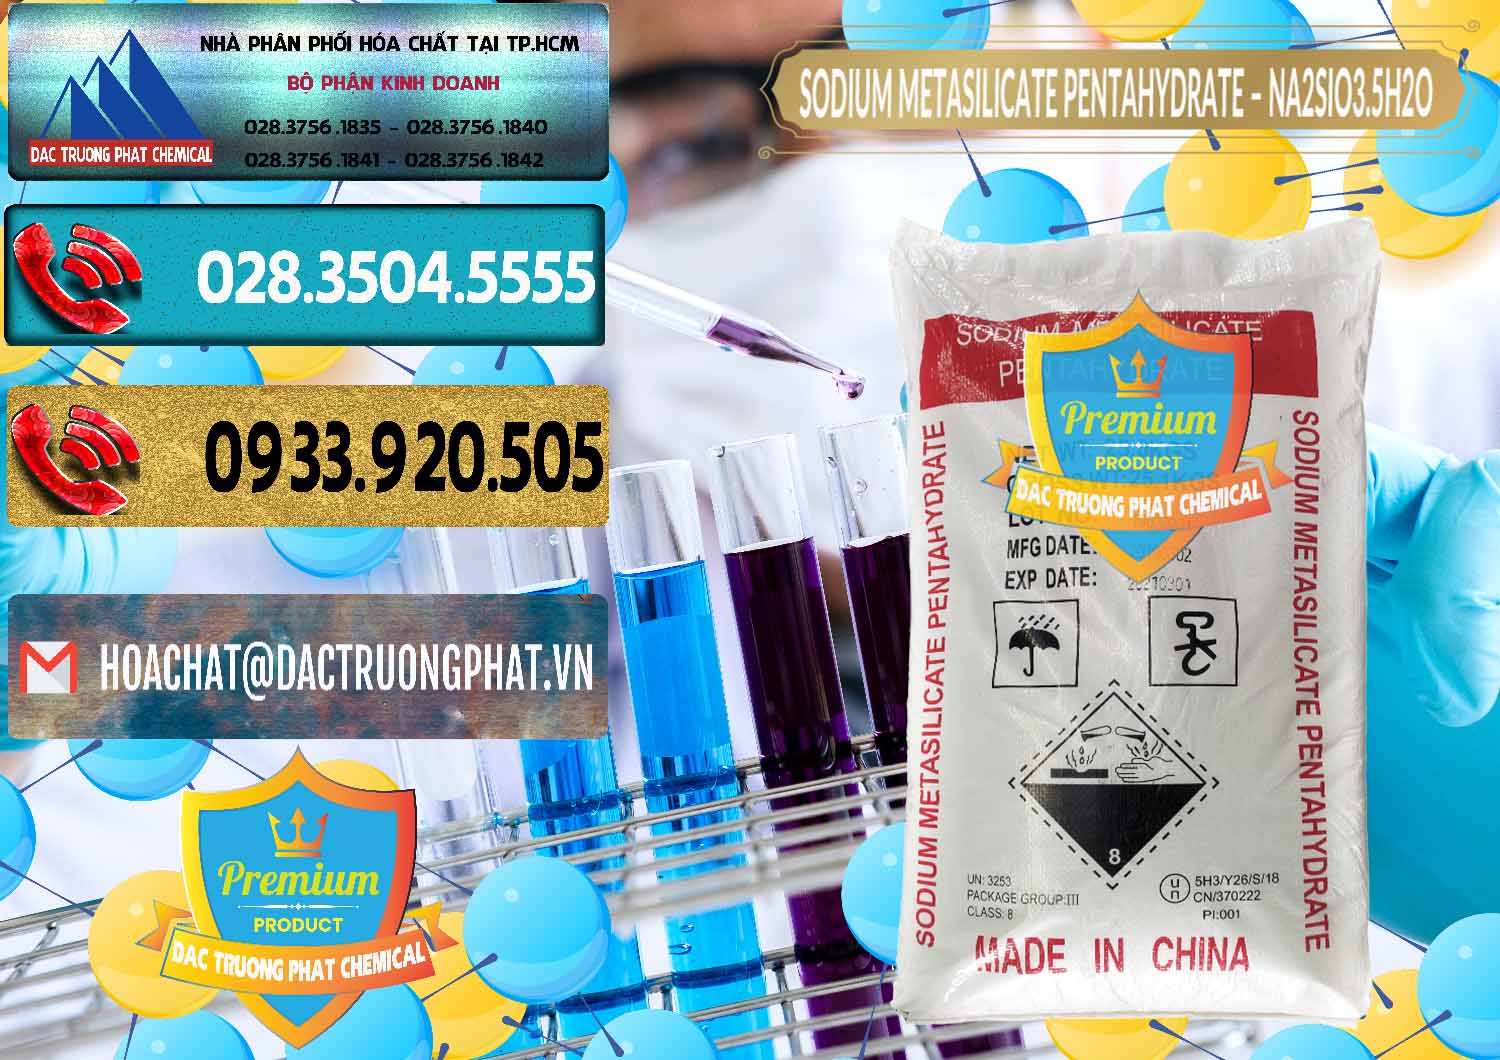 Nơi chuyên bán và cung ứng Sodium Metasilicate Pentahydrate – Silicate Bột Trung Quốc China - 0147 - Đơn vị bán & cung cấp hóa chất tại TP.HCM - hoachatdetnhuom.com